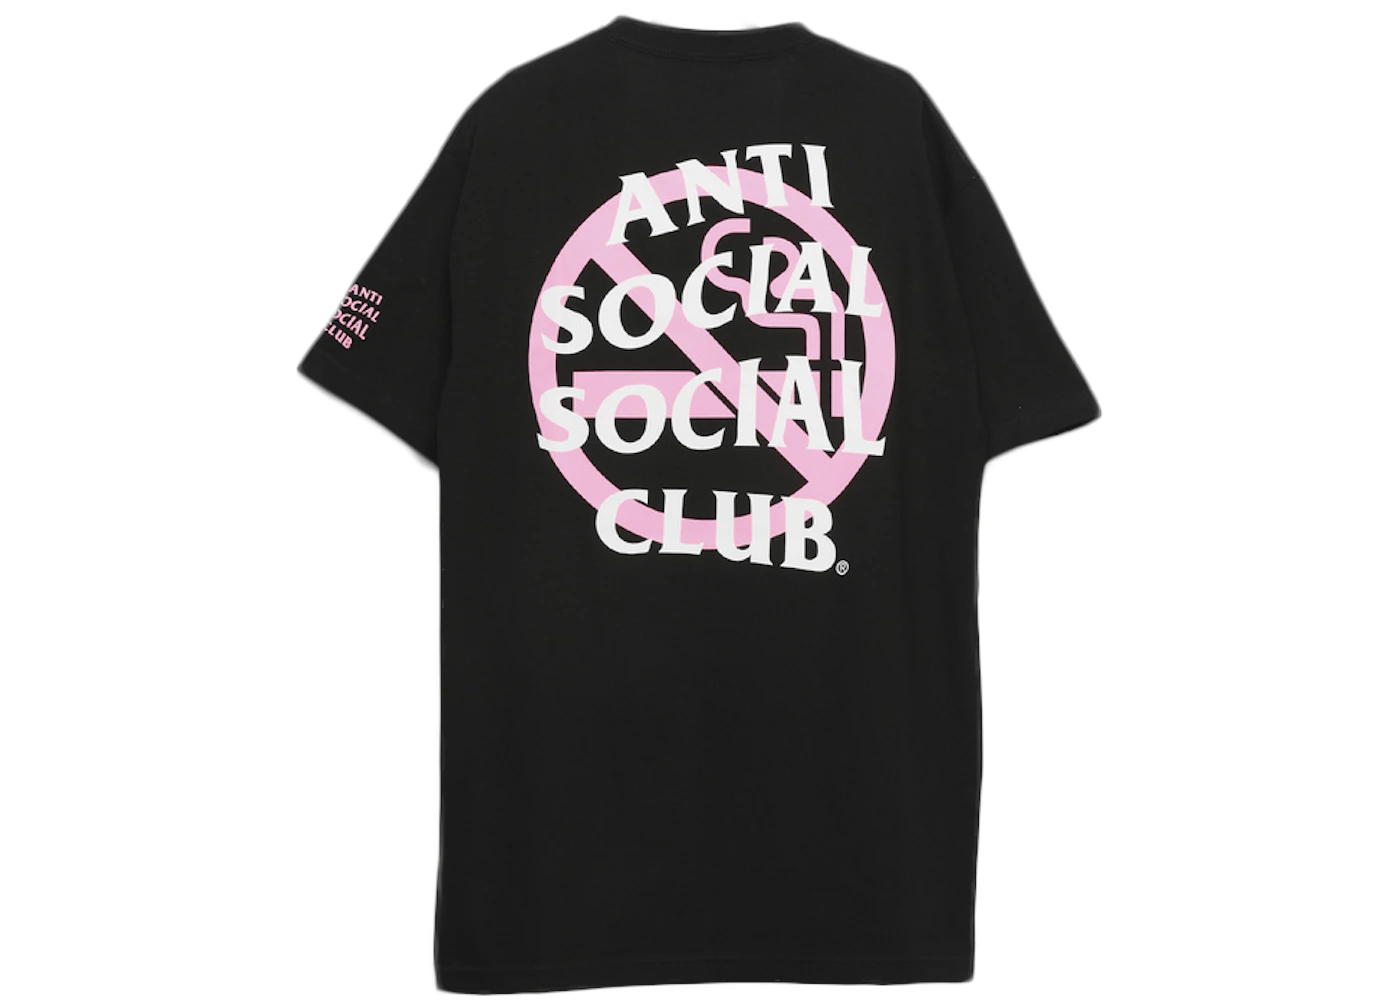 Anti Social Social Club x FR2 Tee Black - SS20 - US